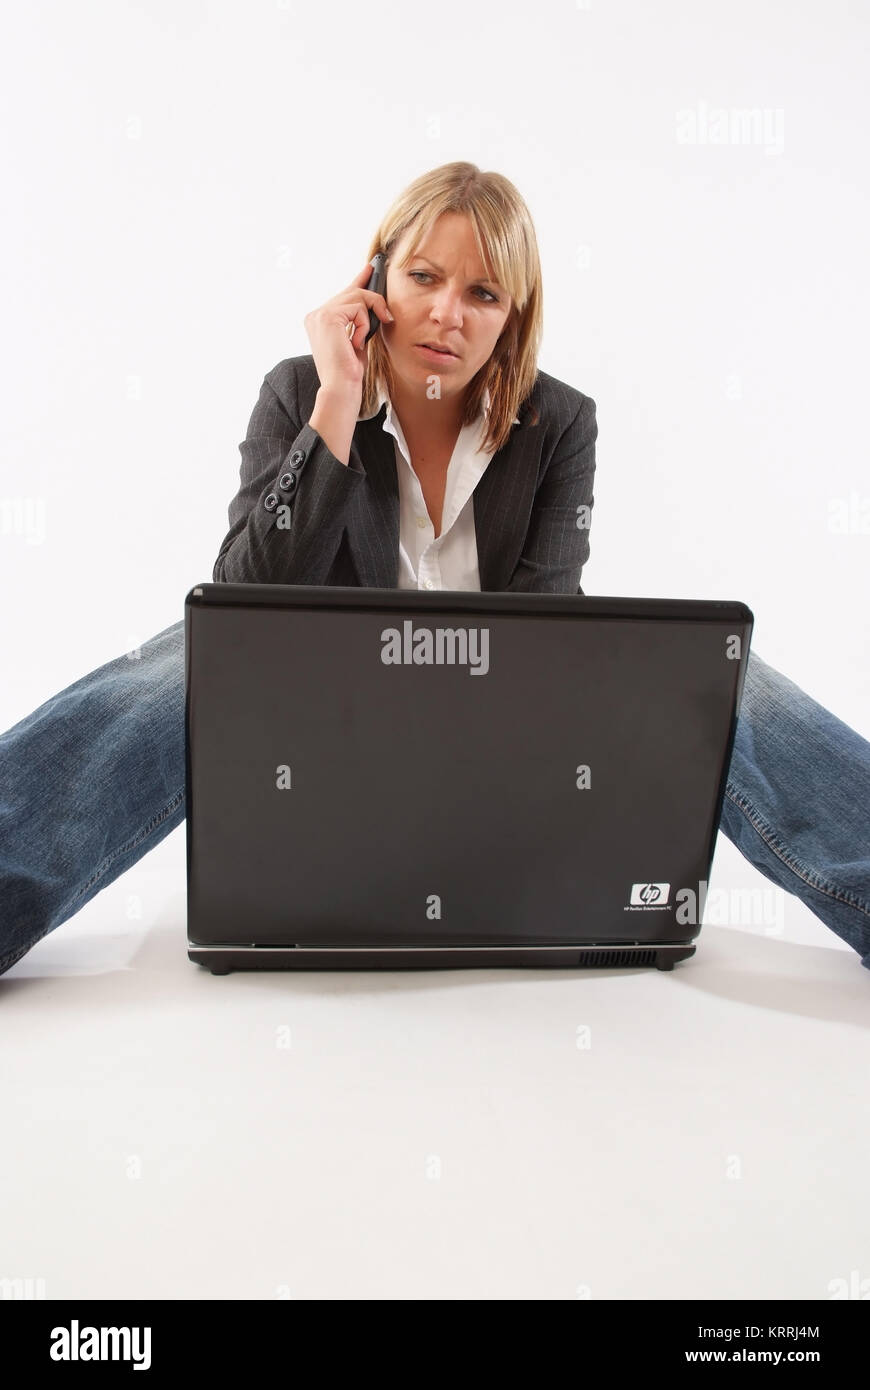 Frau sitzt vor Laptop und telefoniert - woman with mobile using laptop Stock Photo